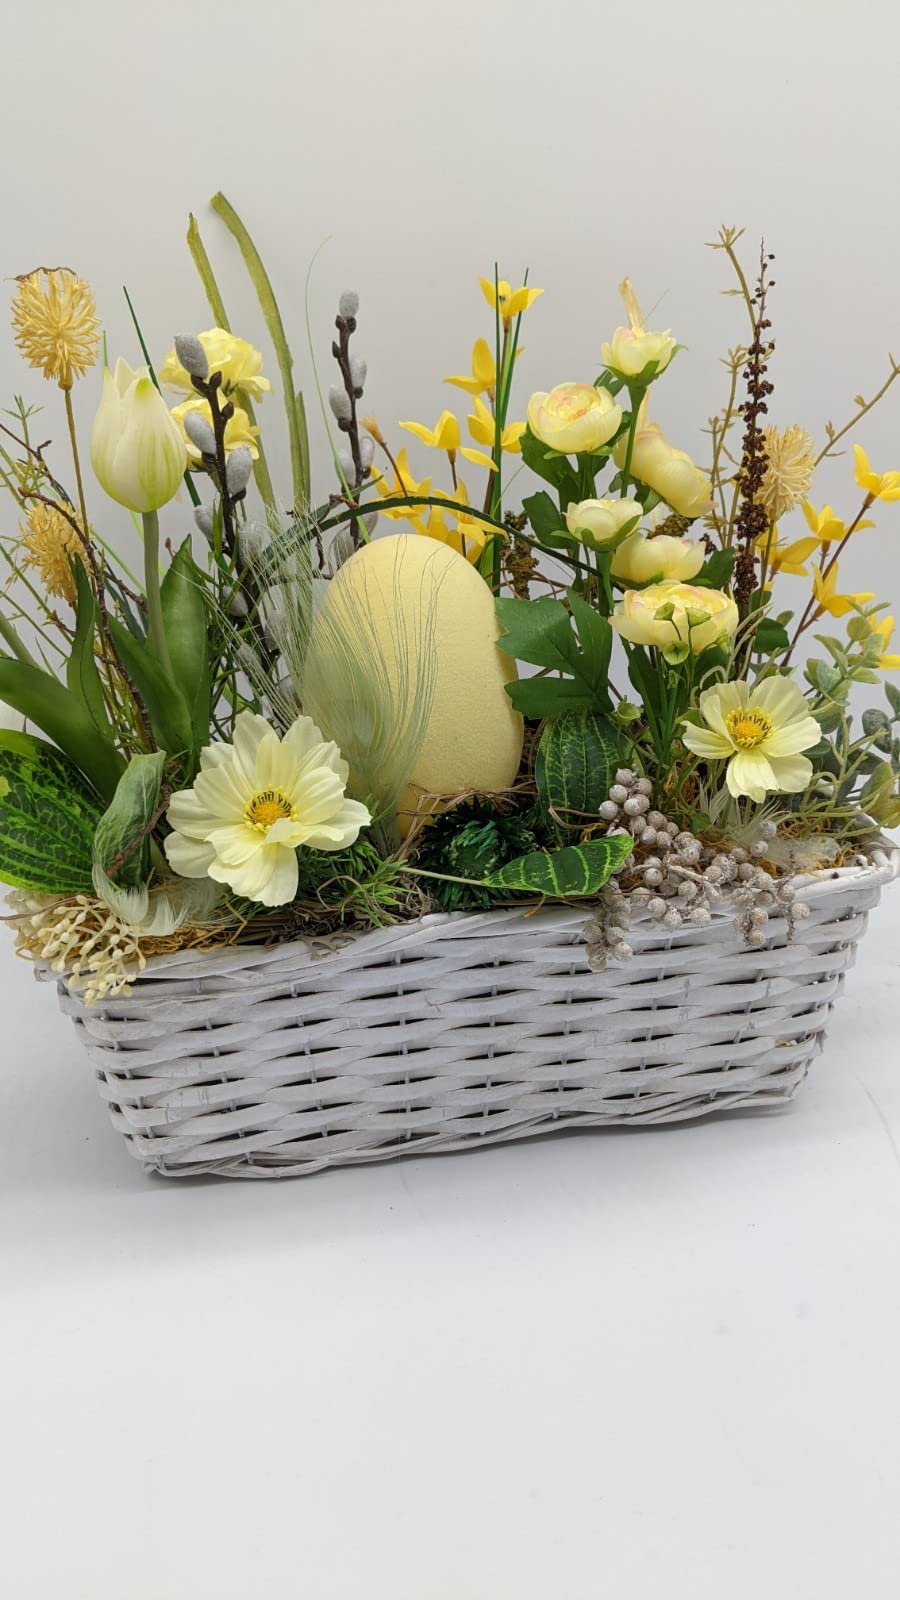 Ostergesteck Frühlingsgesteck Ei, Cosmea, Ranunkel, Tulpe, Weidenkätzchen Gräser gelb grün